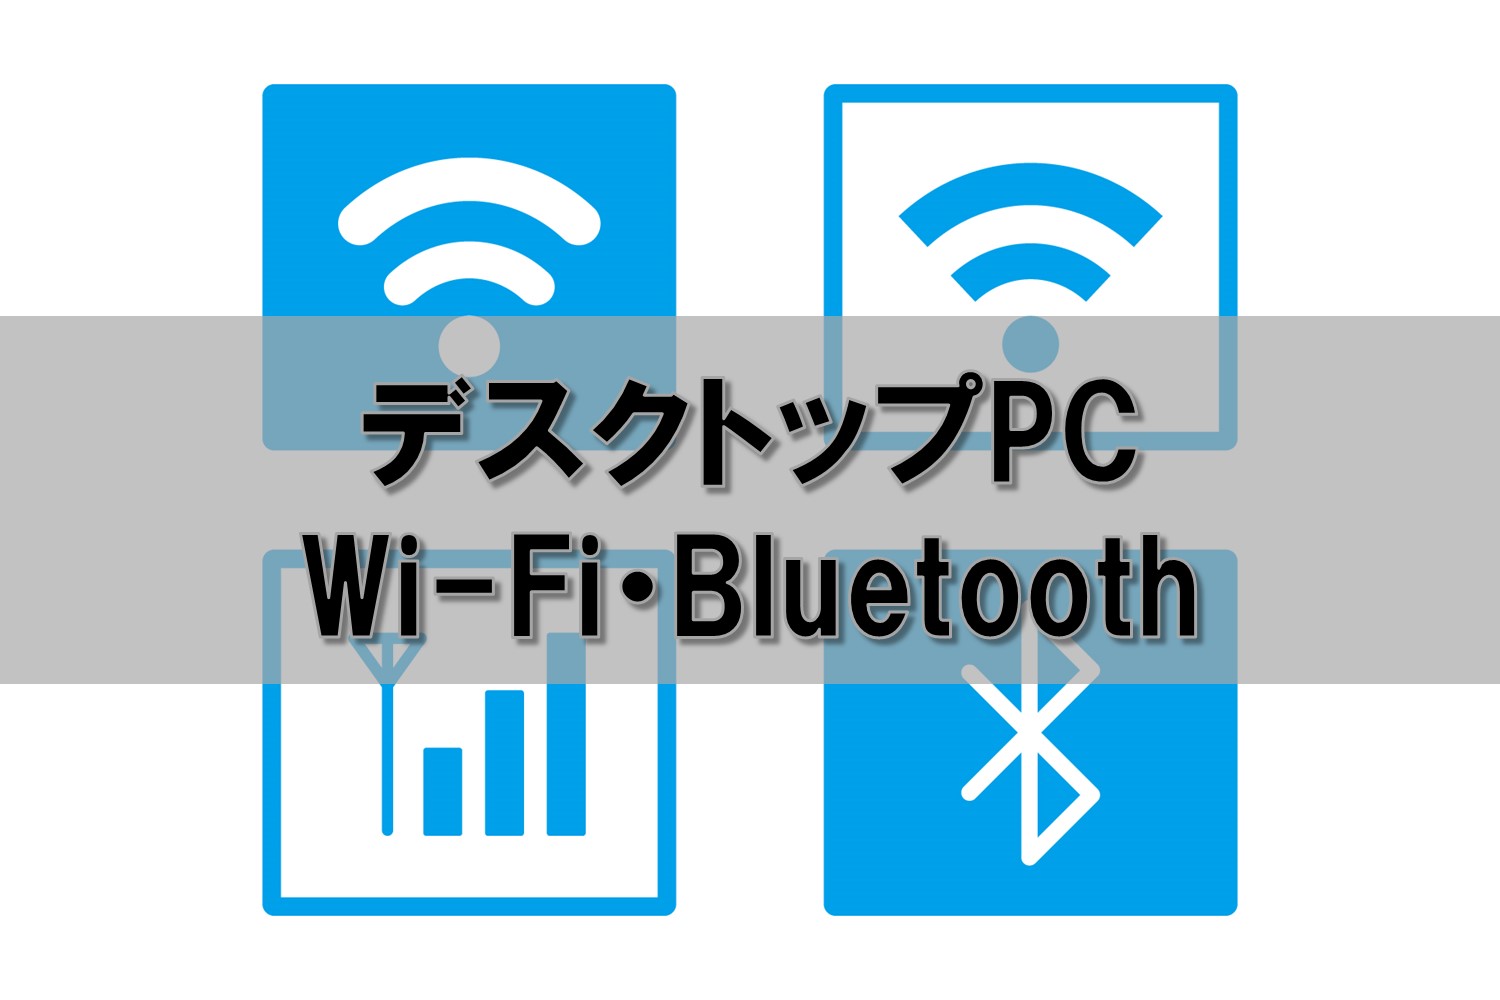 デスクトップPCをワイヤレス化 Wi-Fi・Bluetoothを搭載する方法の比較